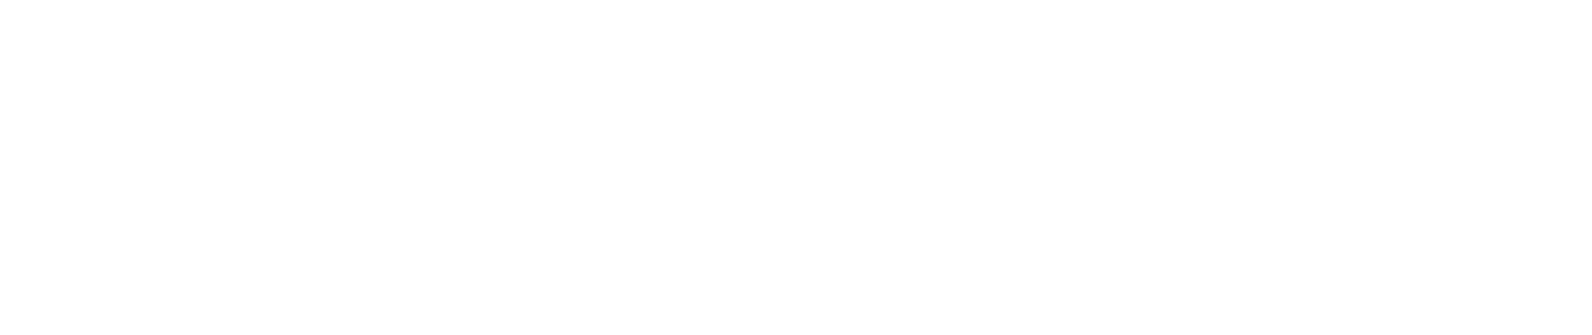 50 шт./лот Обжимные бусины cove застежки шнура концевые шапки строка ленты Кожаный Зажим Foldover DIY цепочки и ожерелья Браслет инструменты